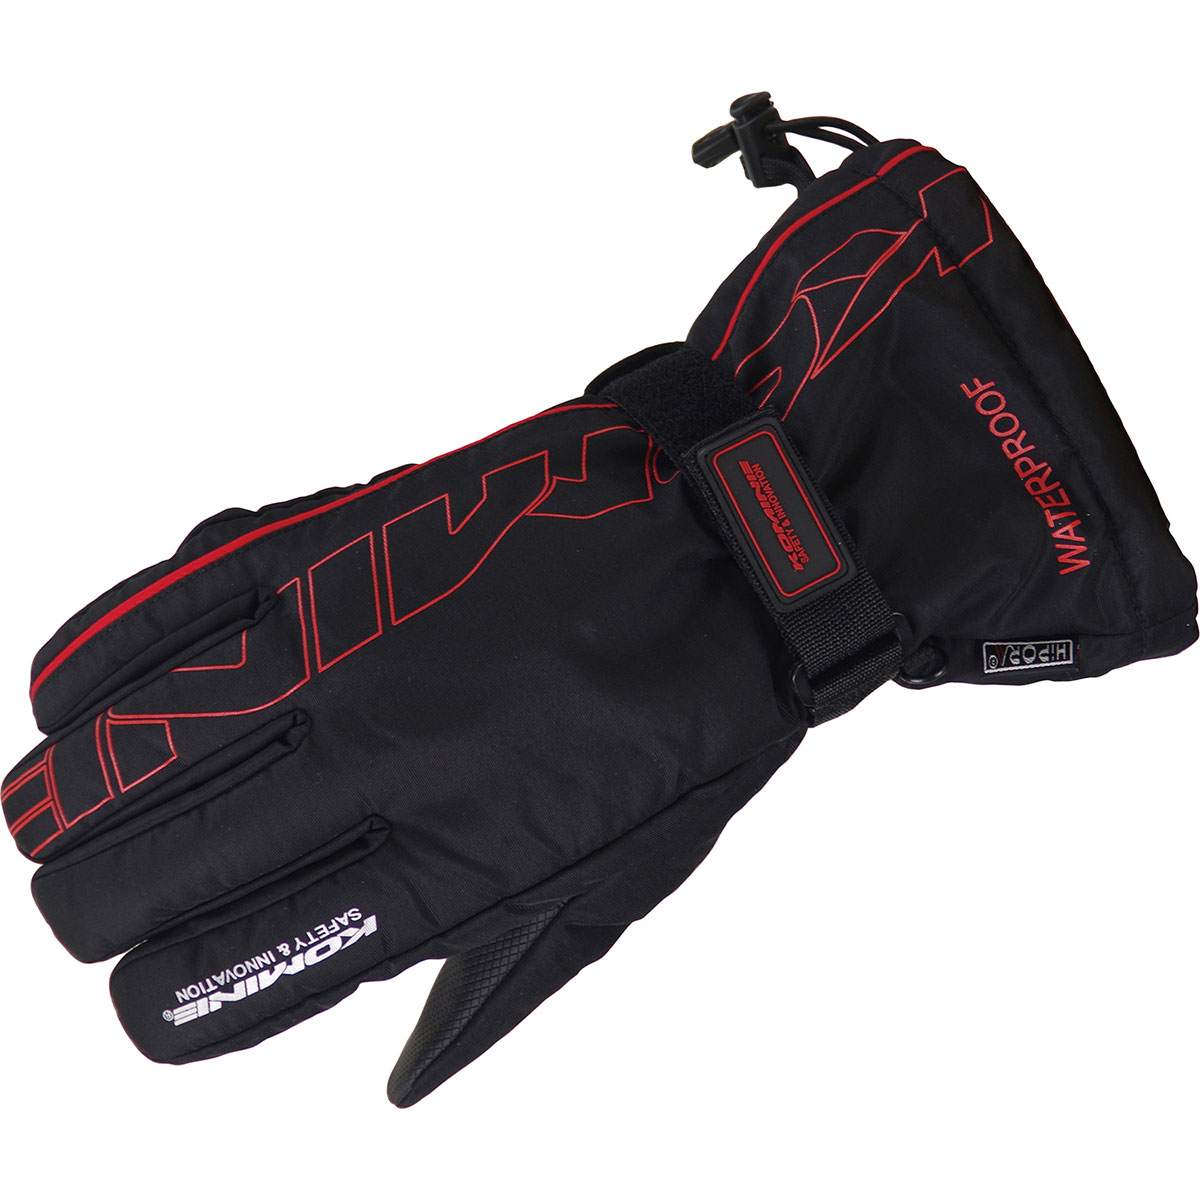 コミネ KOMINE バイク用 グローブ Gloves GK-132 レインオーバーグローブ ブラック レッド 黒 赤 XLサイズ 06-132/BK…